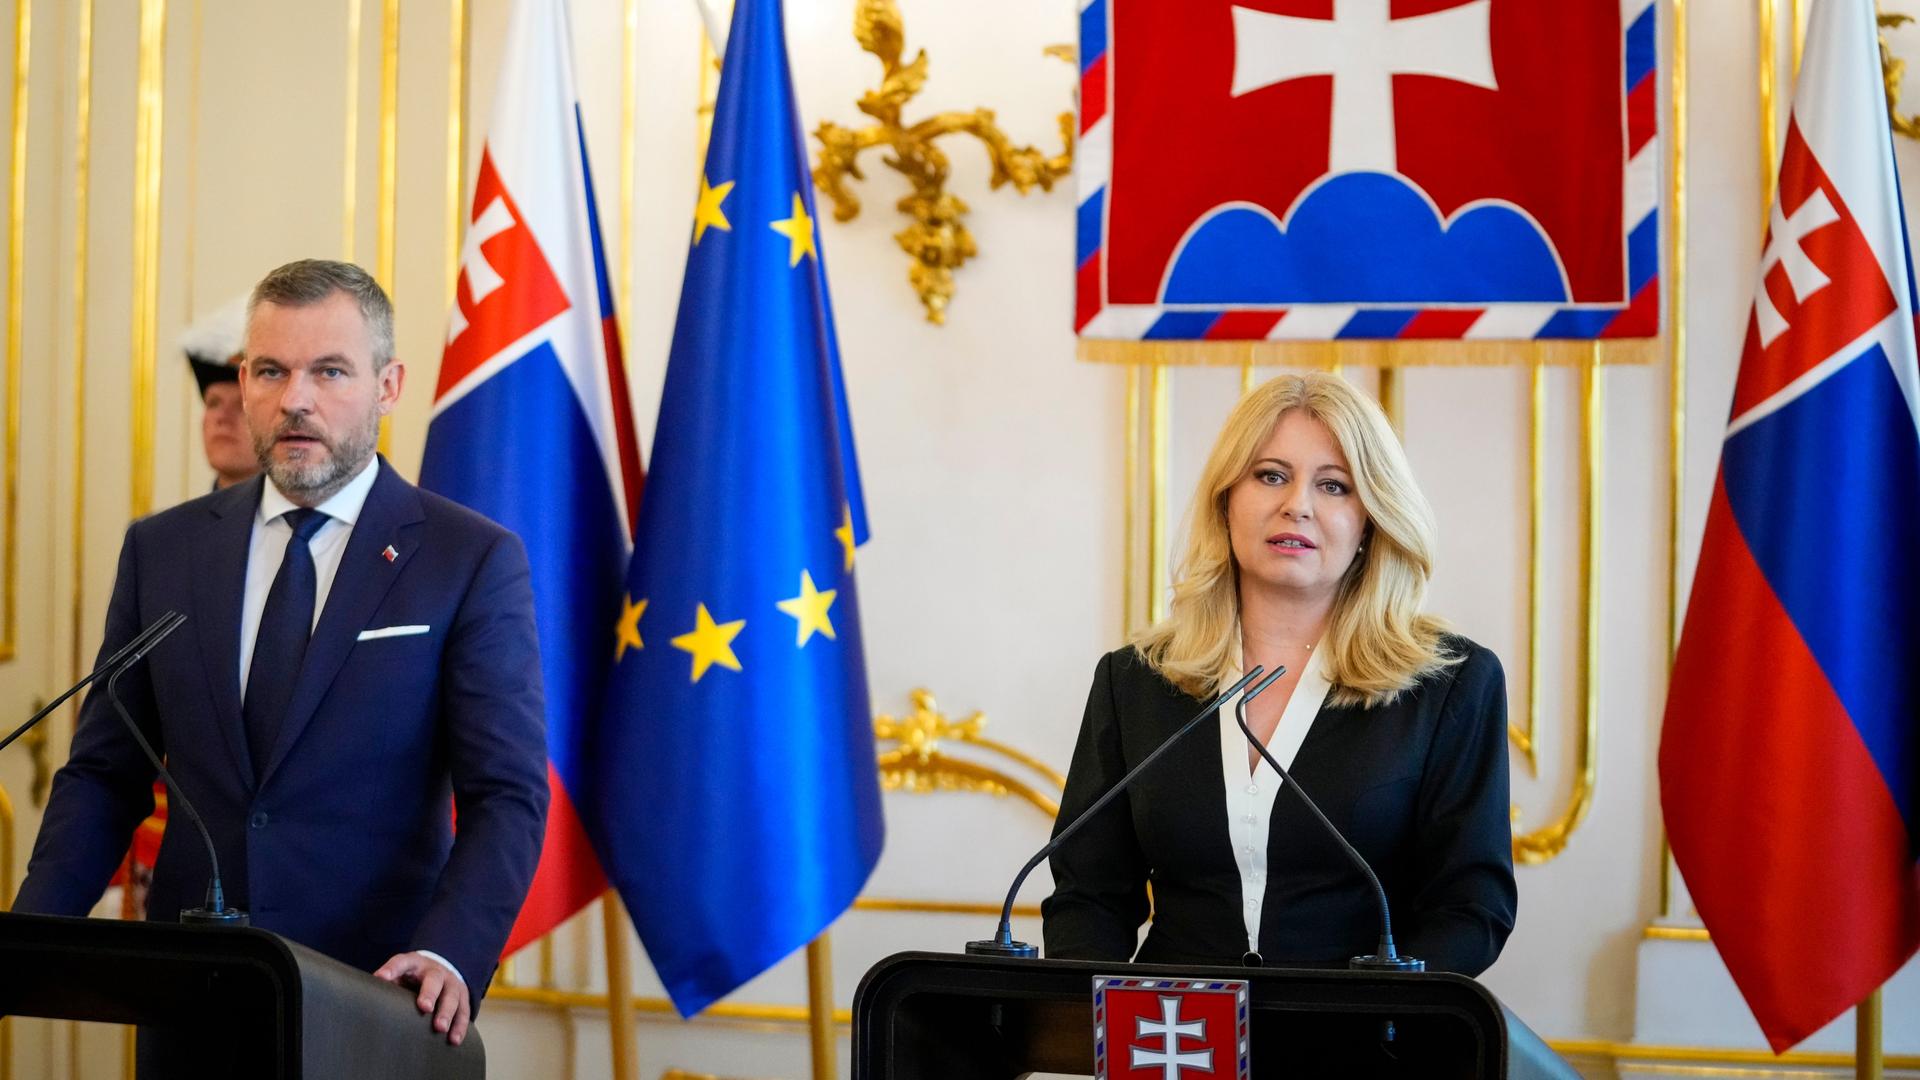 Slowakei, Bratislava: Die amtierende slowakische Präsidentin Zuzana Caputova (r) und der designierte slowakische Präsident Peter Pellegrini geben im Präsidentenpalast eine gemeinsame Presseerklärung ab.